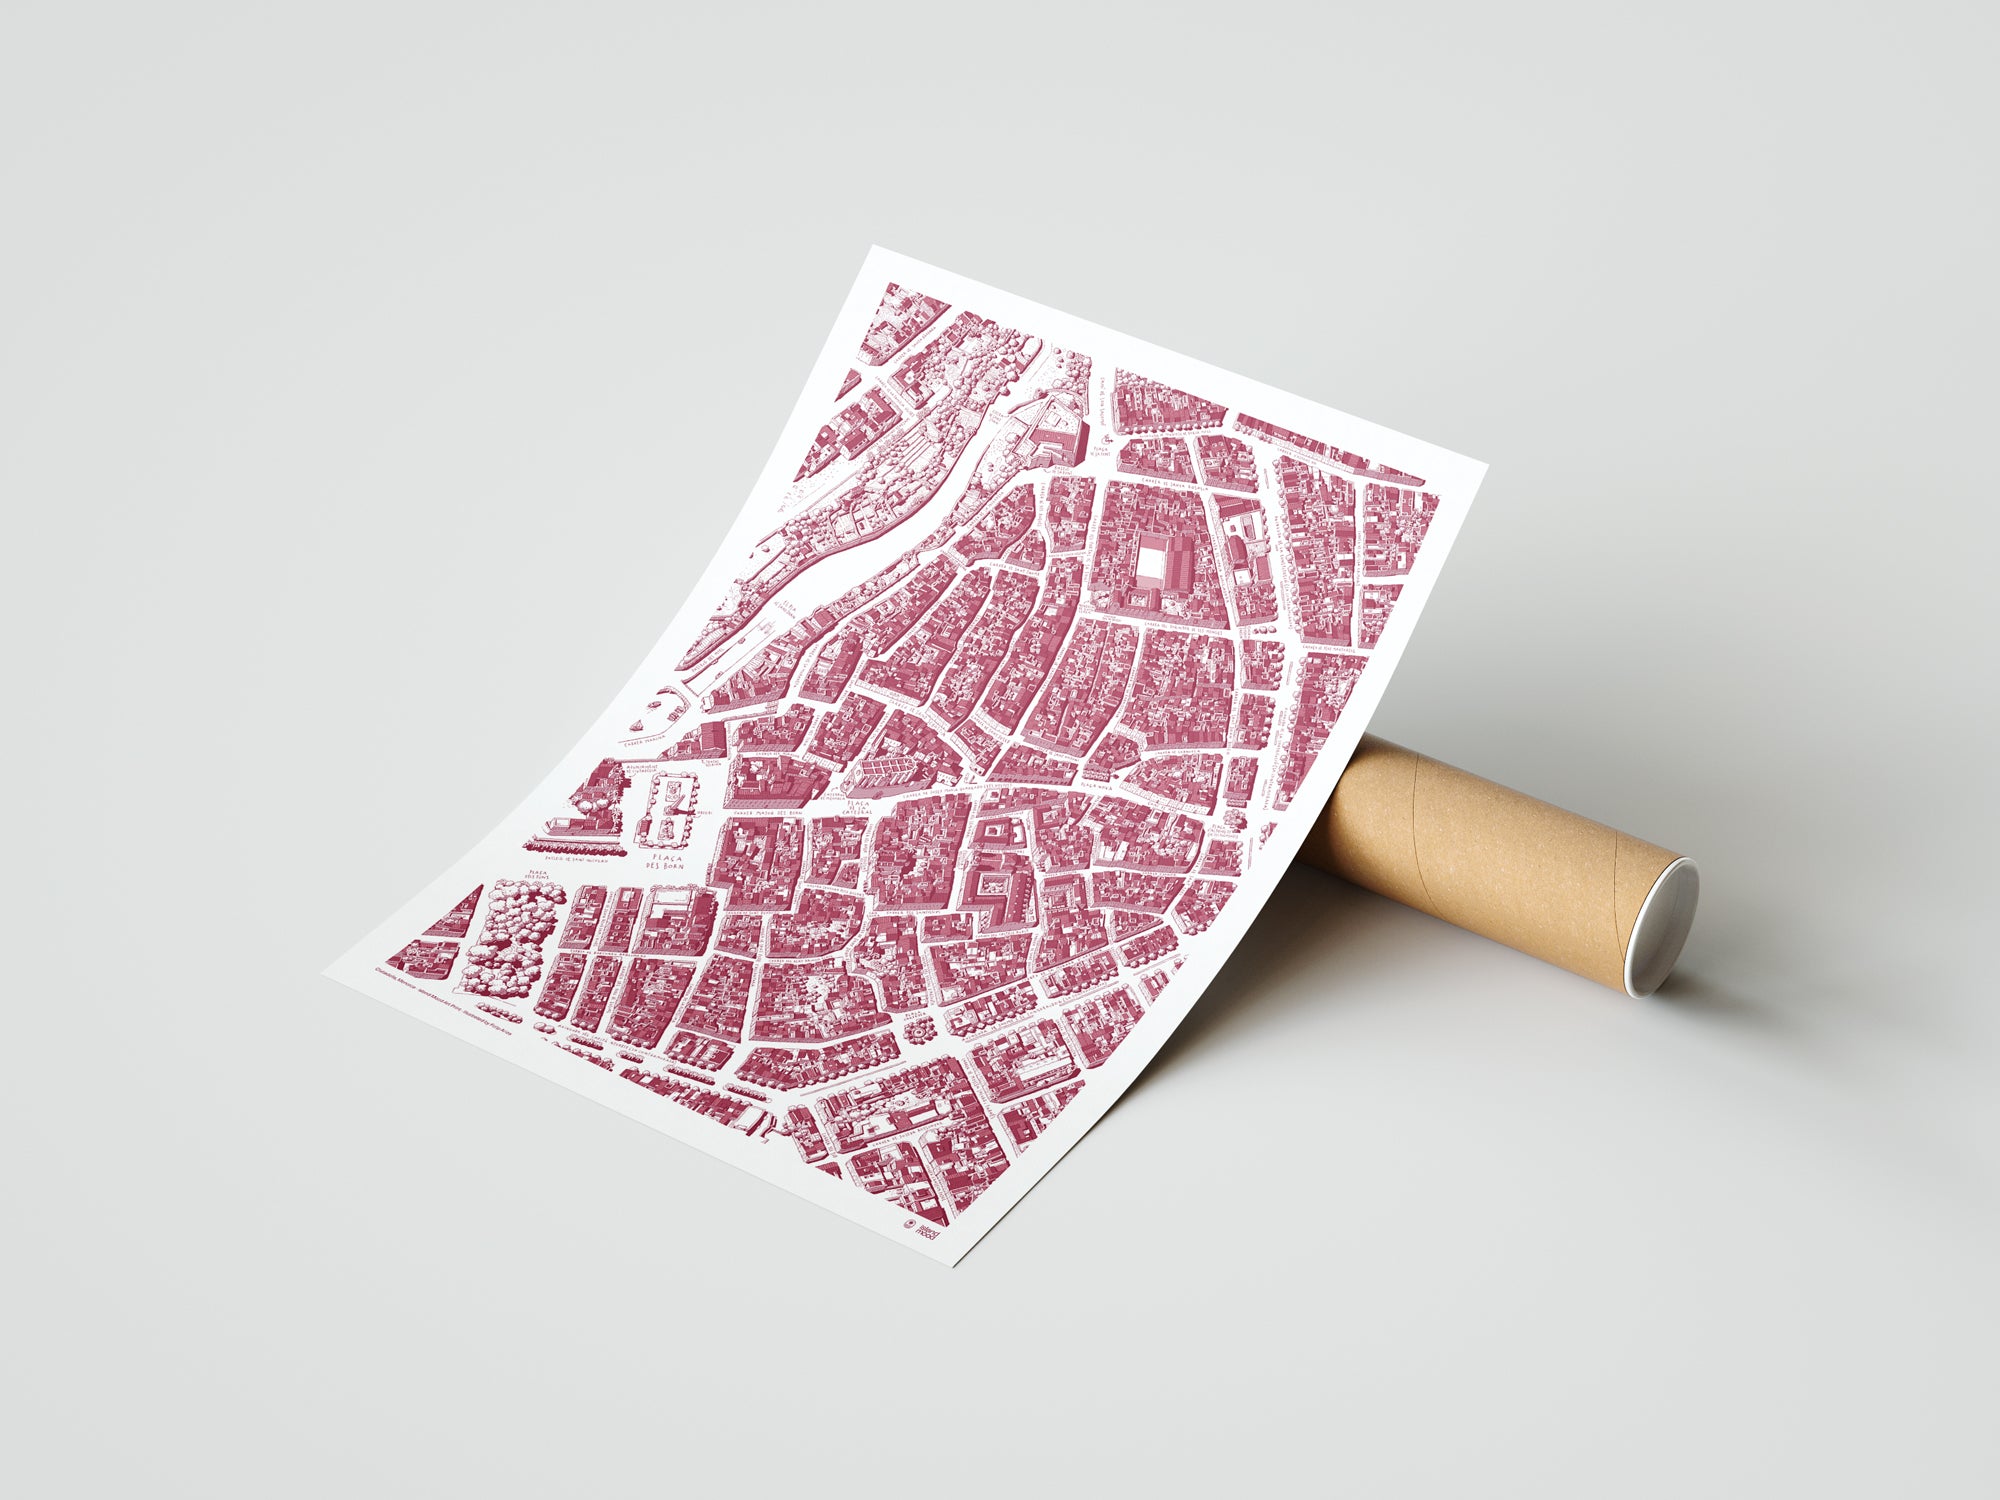 Art Print Mapa ilustrado de Ciutadella